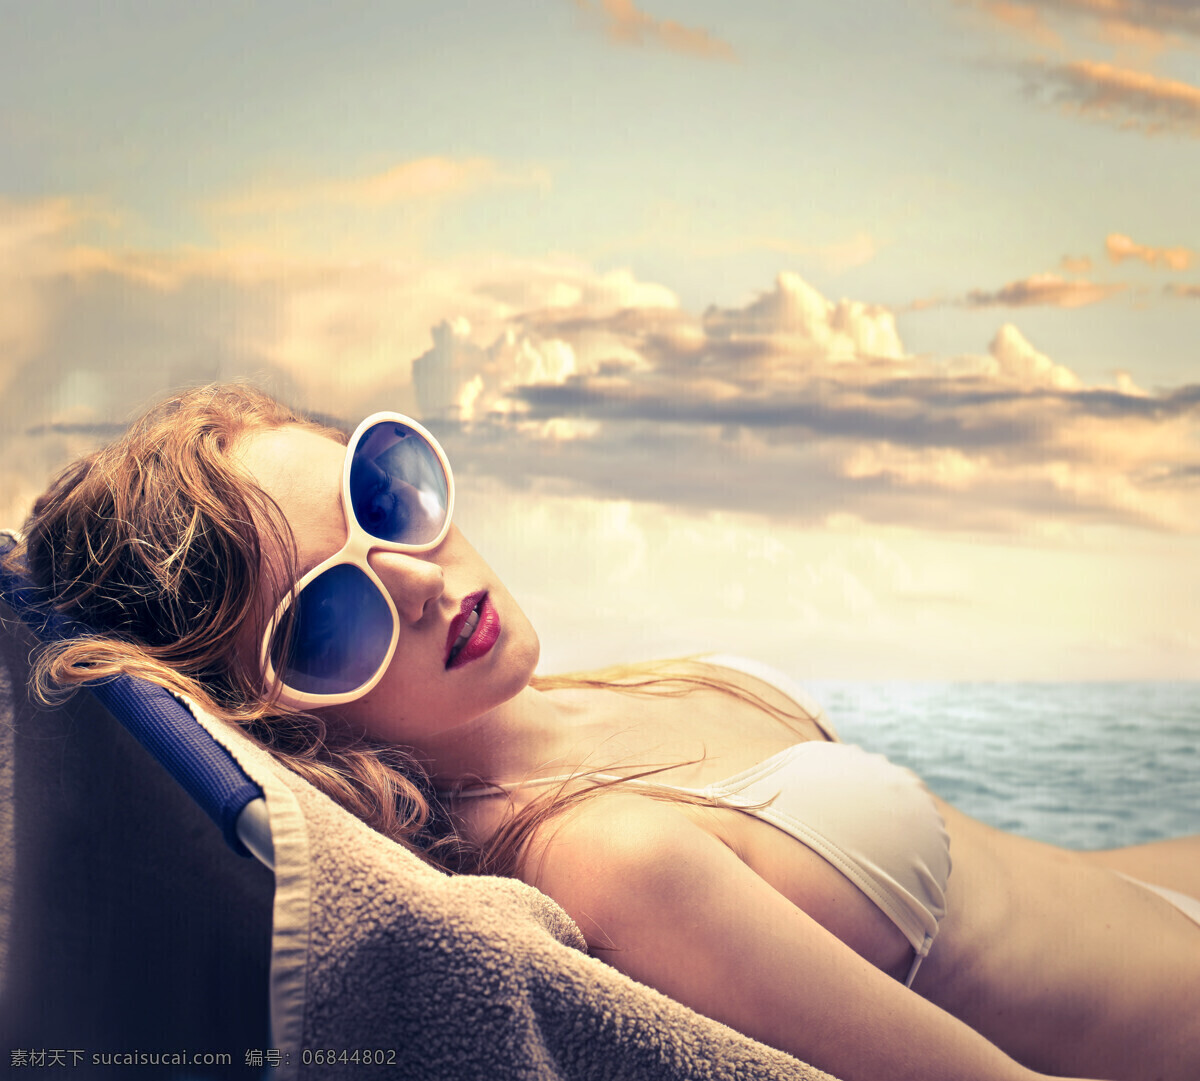 躺 休闲椅 美女图片 大海 海边 海水 浪花 海浪 海滩 沙滩 蓝天 美女 晚霞 风景 生活人物 人物图片